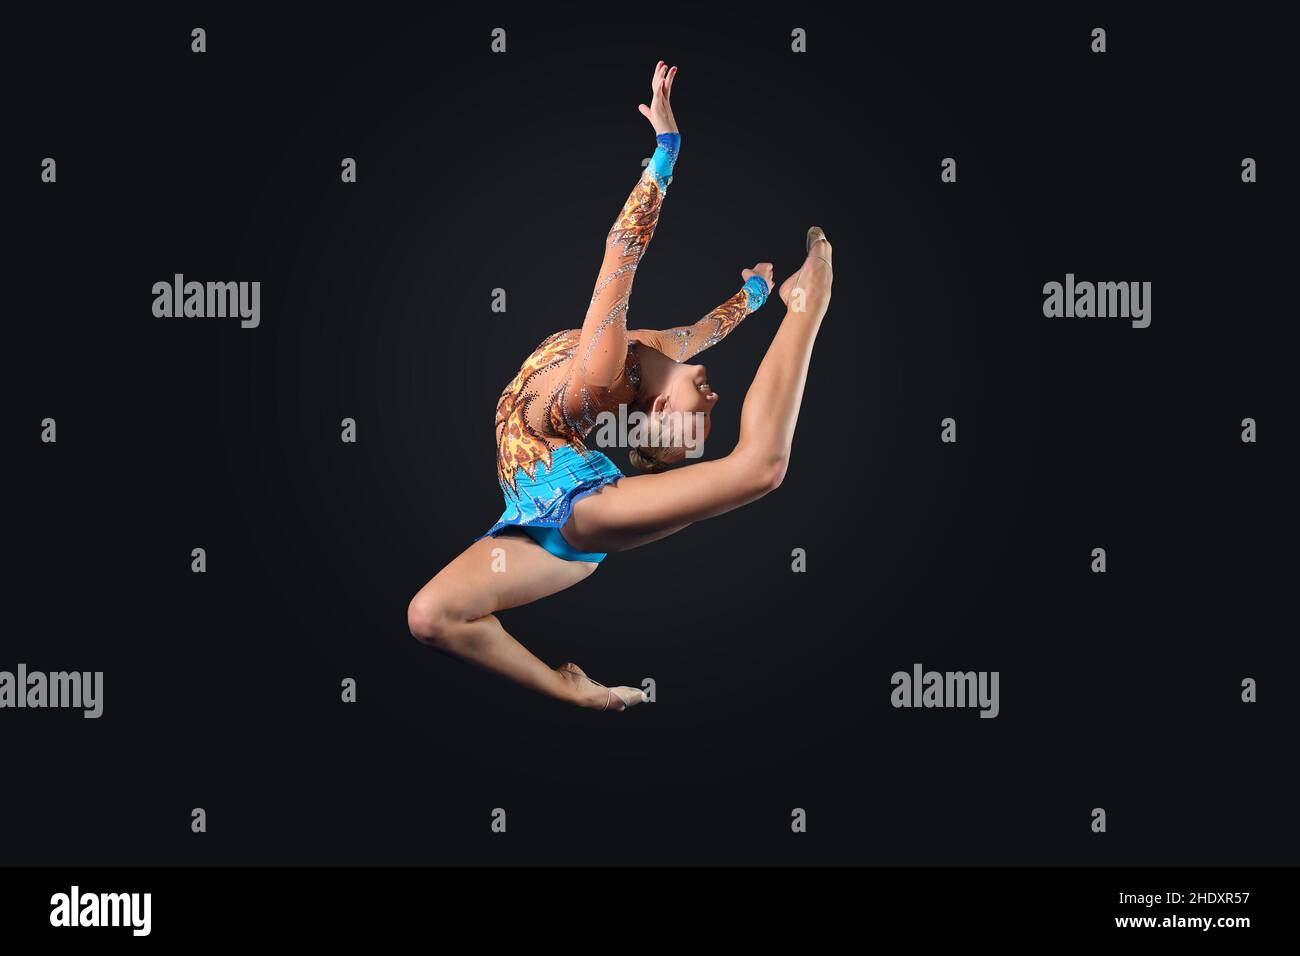 flexible, acrobat, gymnast, flexibles, acrobats, gymnasts Stock Photo